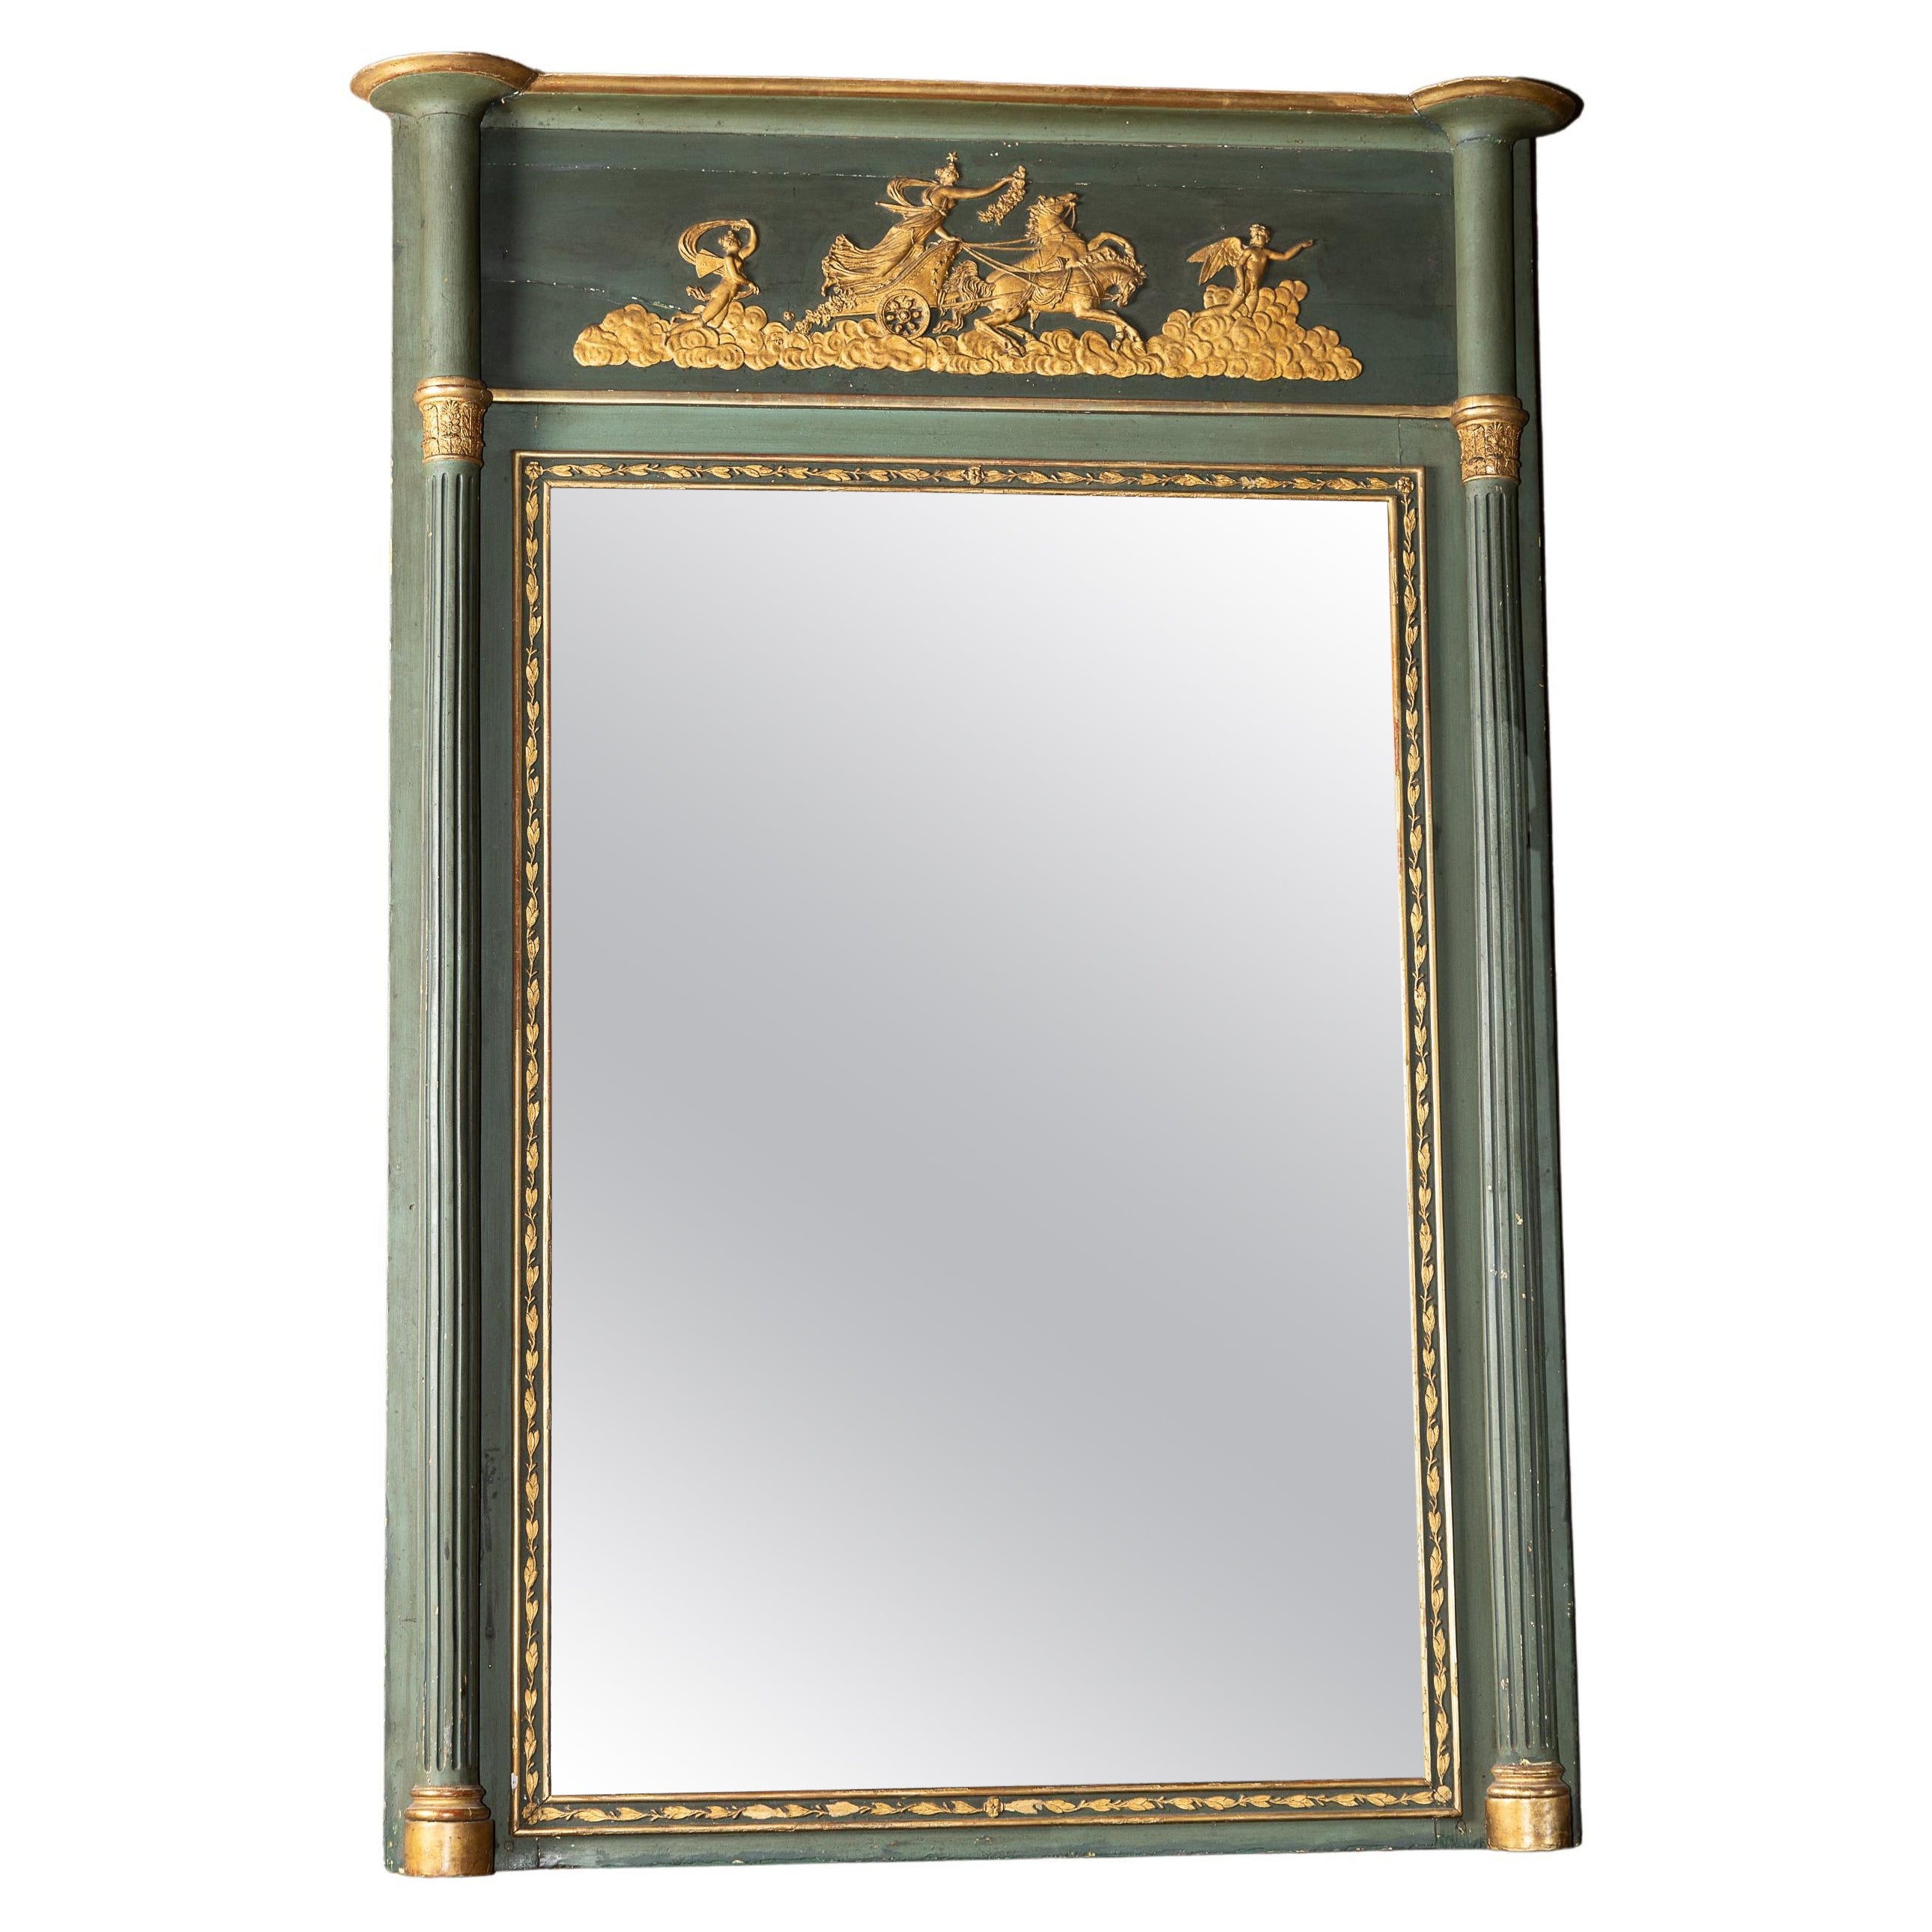 Miroir Empire français du 19ème siècle peint en vert et doré